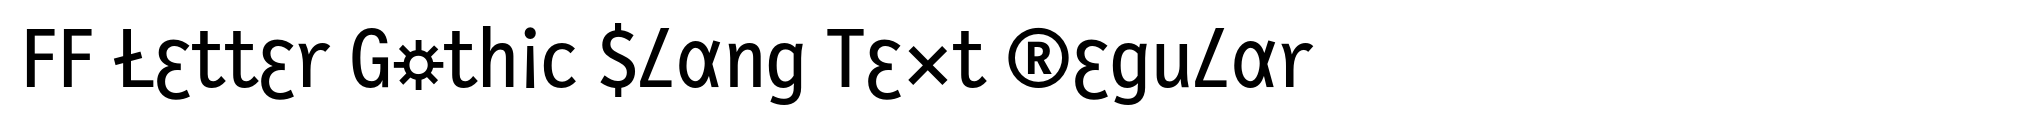 FF Letter Gothic Slang Text Regular image